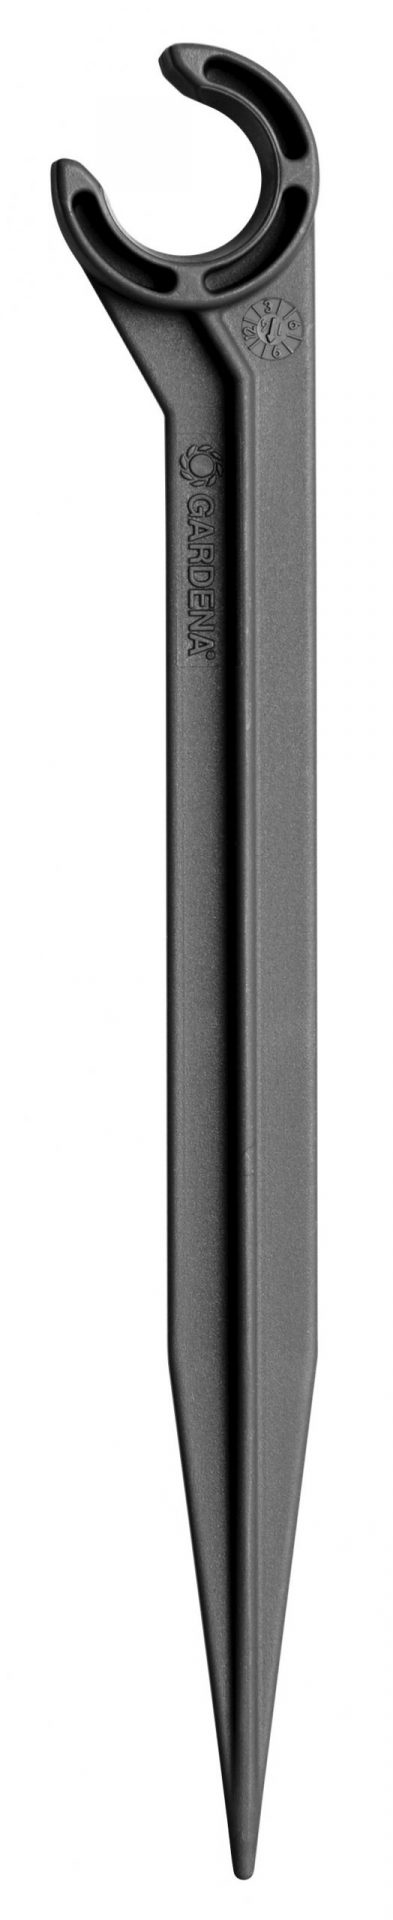 Micro Drip System supporto tubo 1/2 GARDENA 1328-20 Irrigazione GARDENA Memigavi.it